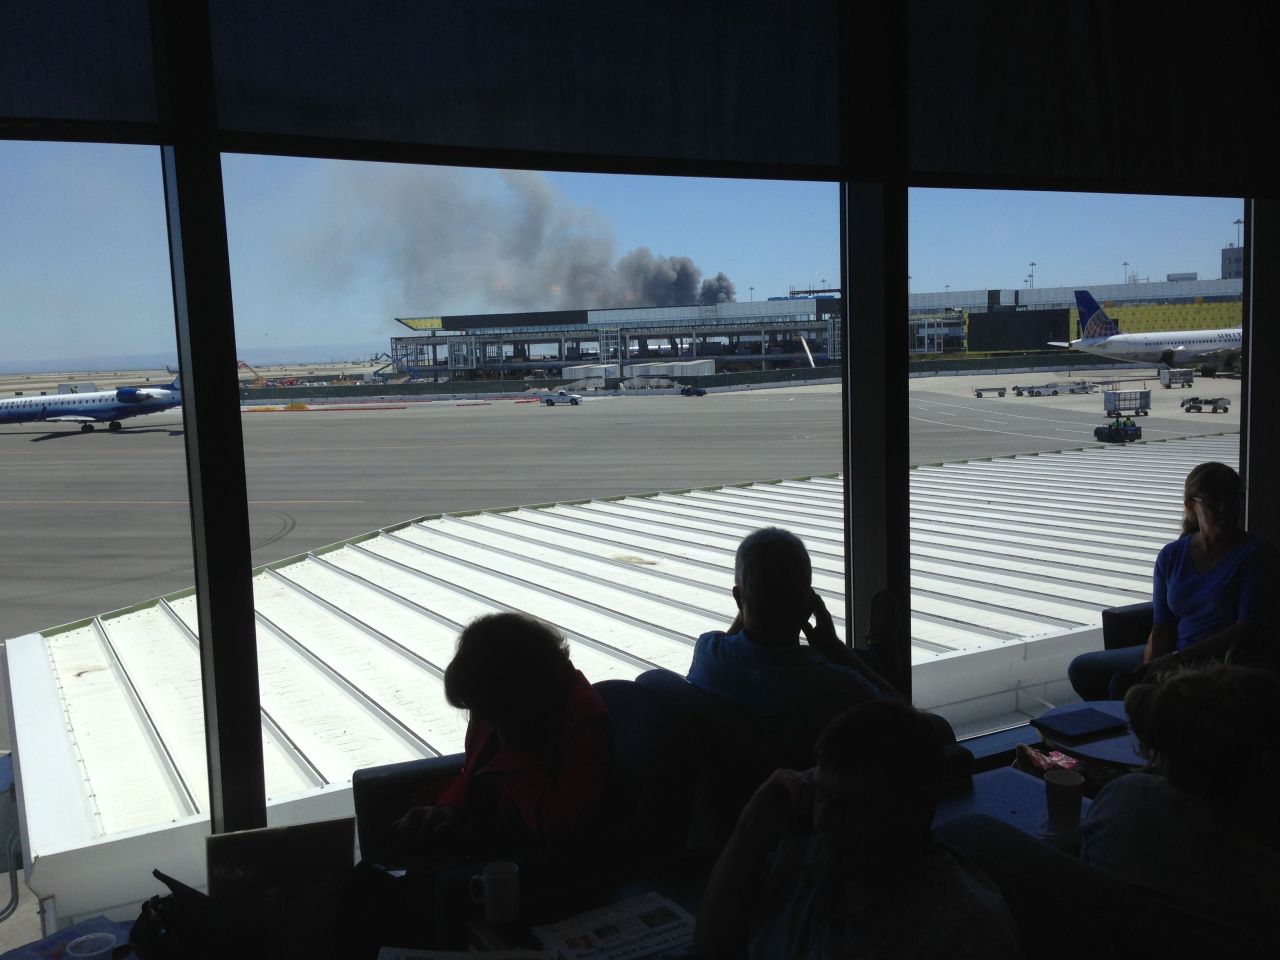 La iReportera Val oomó esta foto mientras esperaba la salida de su avión en el aeropuerto de San Francisco.